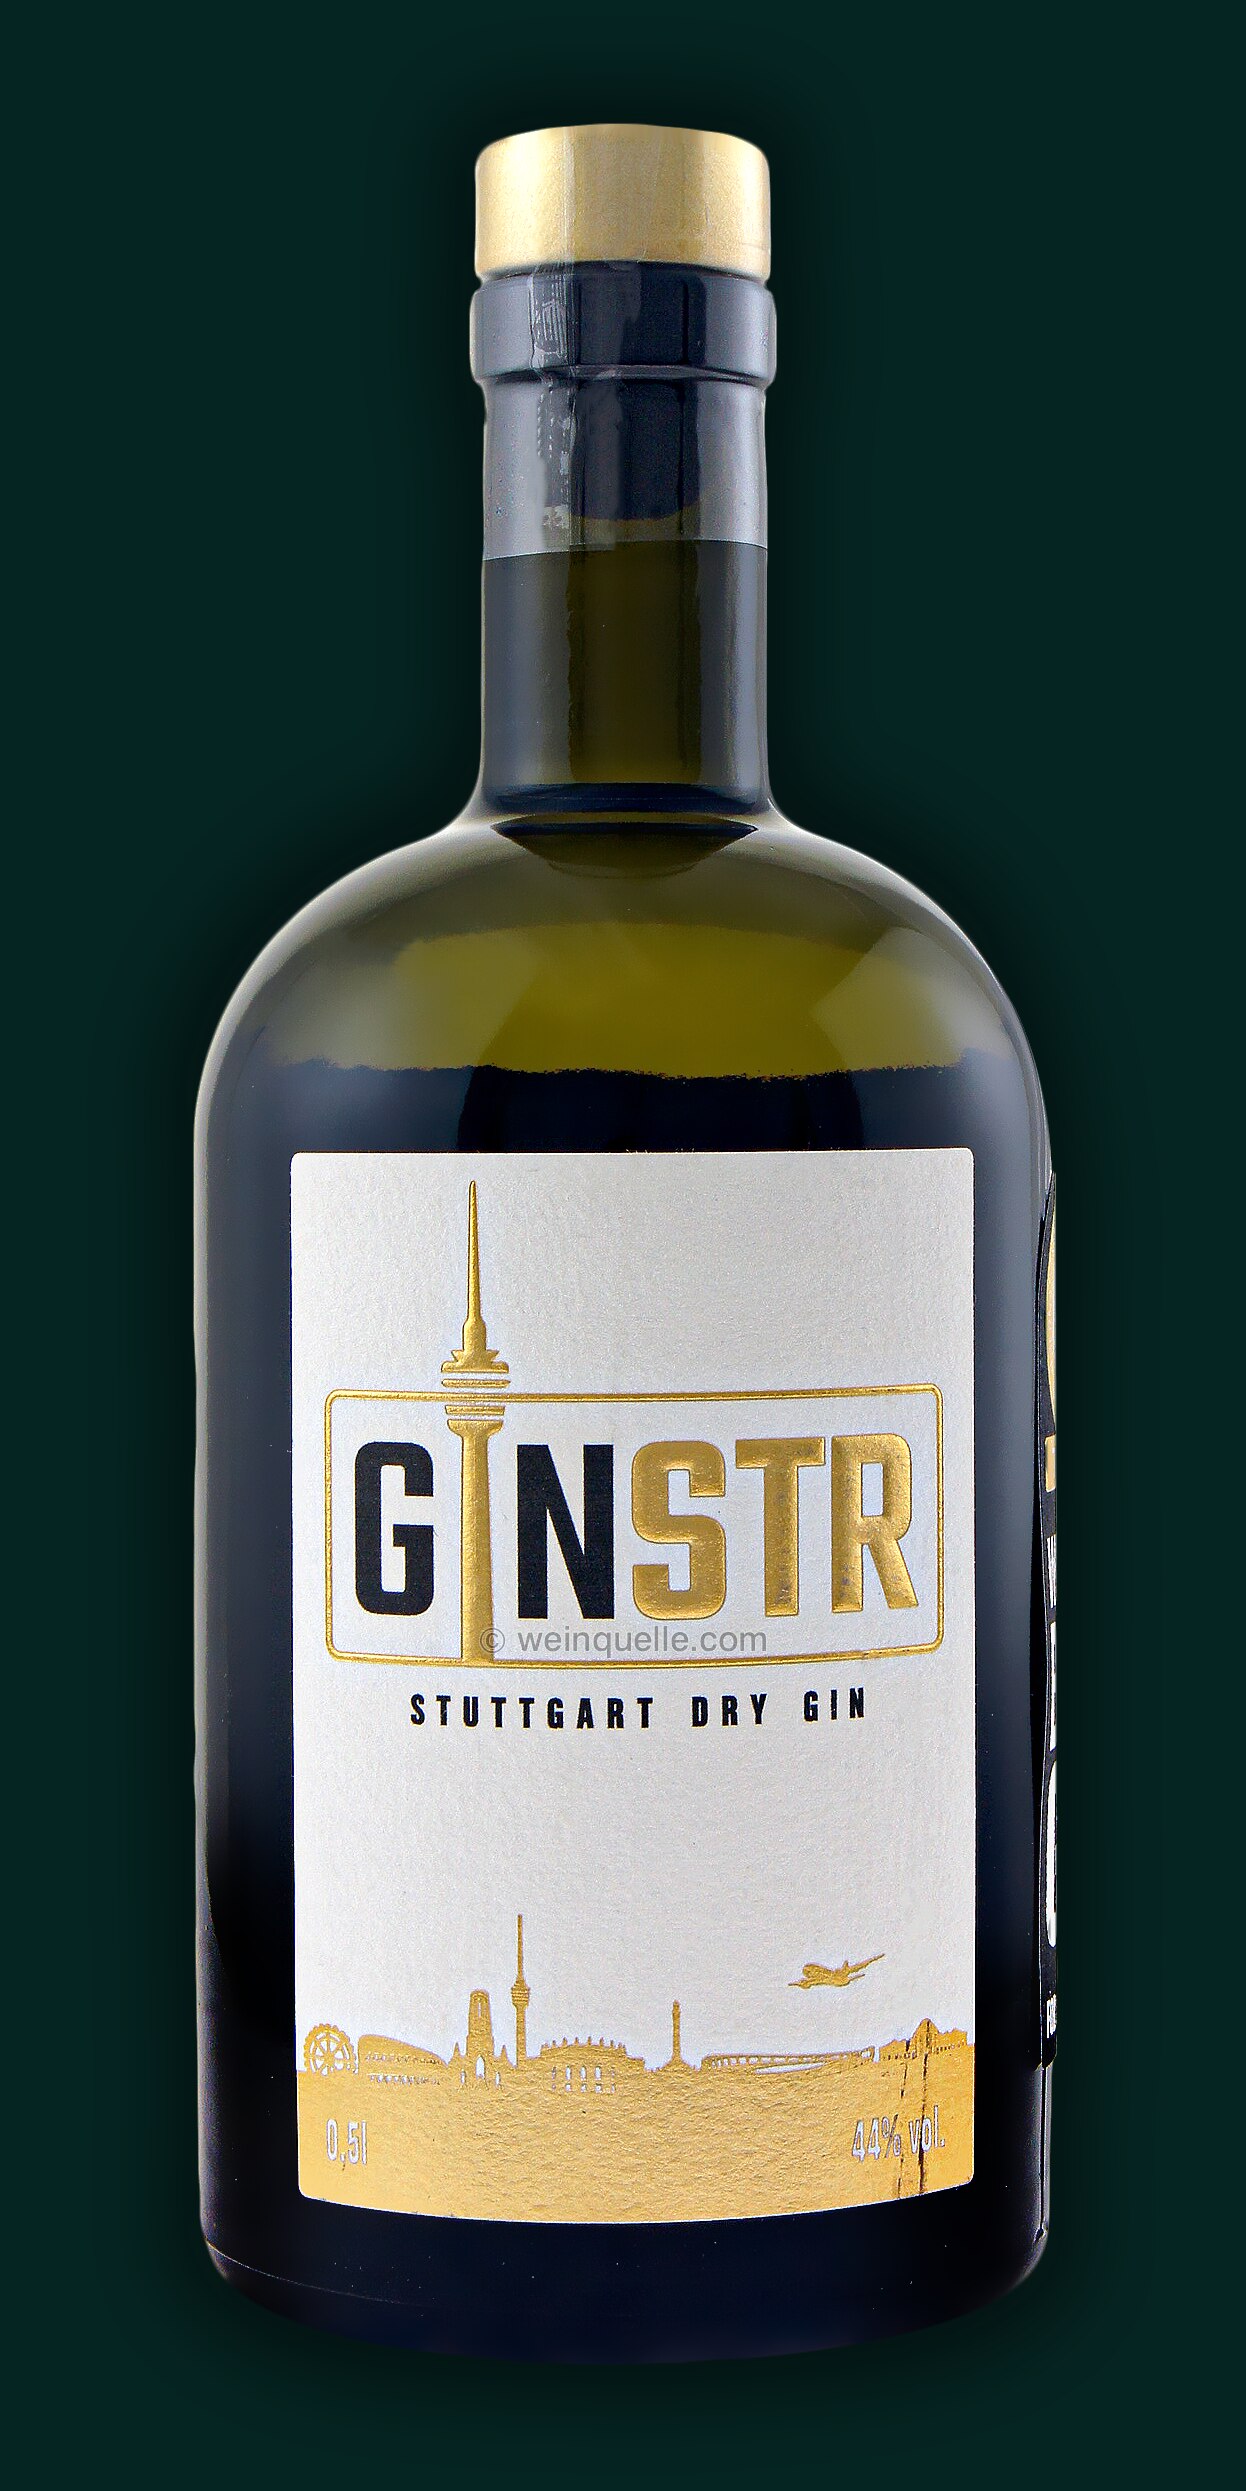 € GINSTR Dry Stuttgart - Weinquelle 31,90 Lühmann Gin,